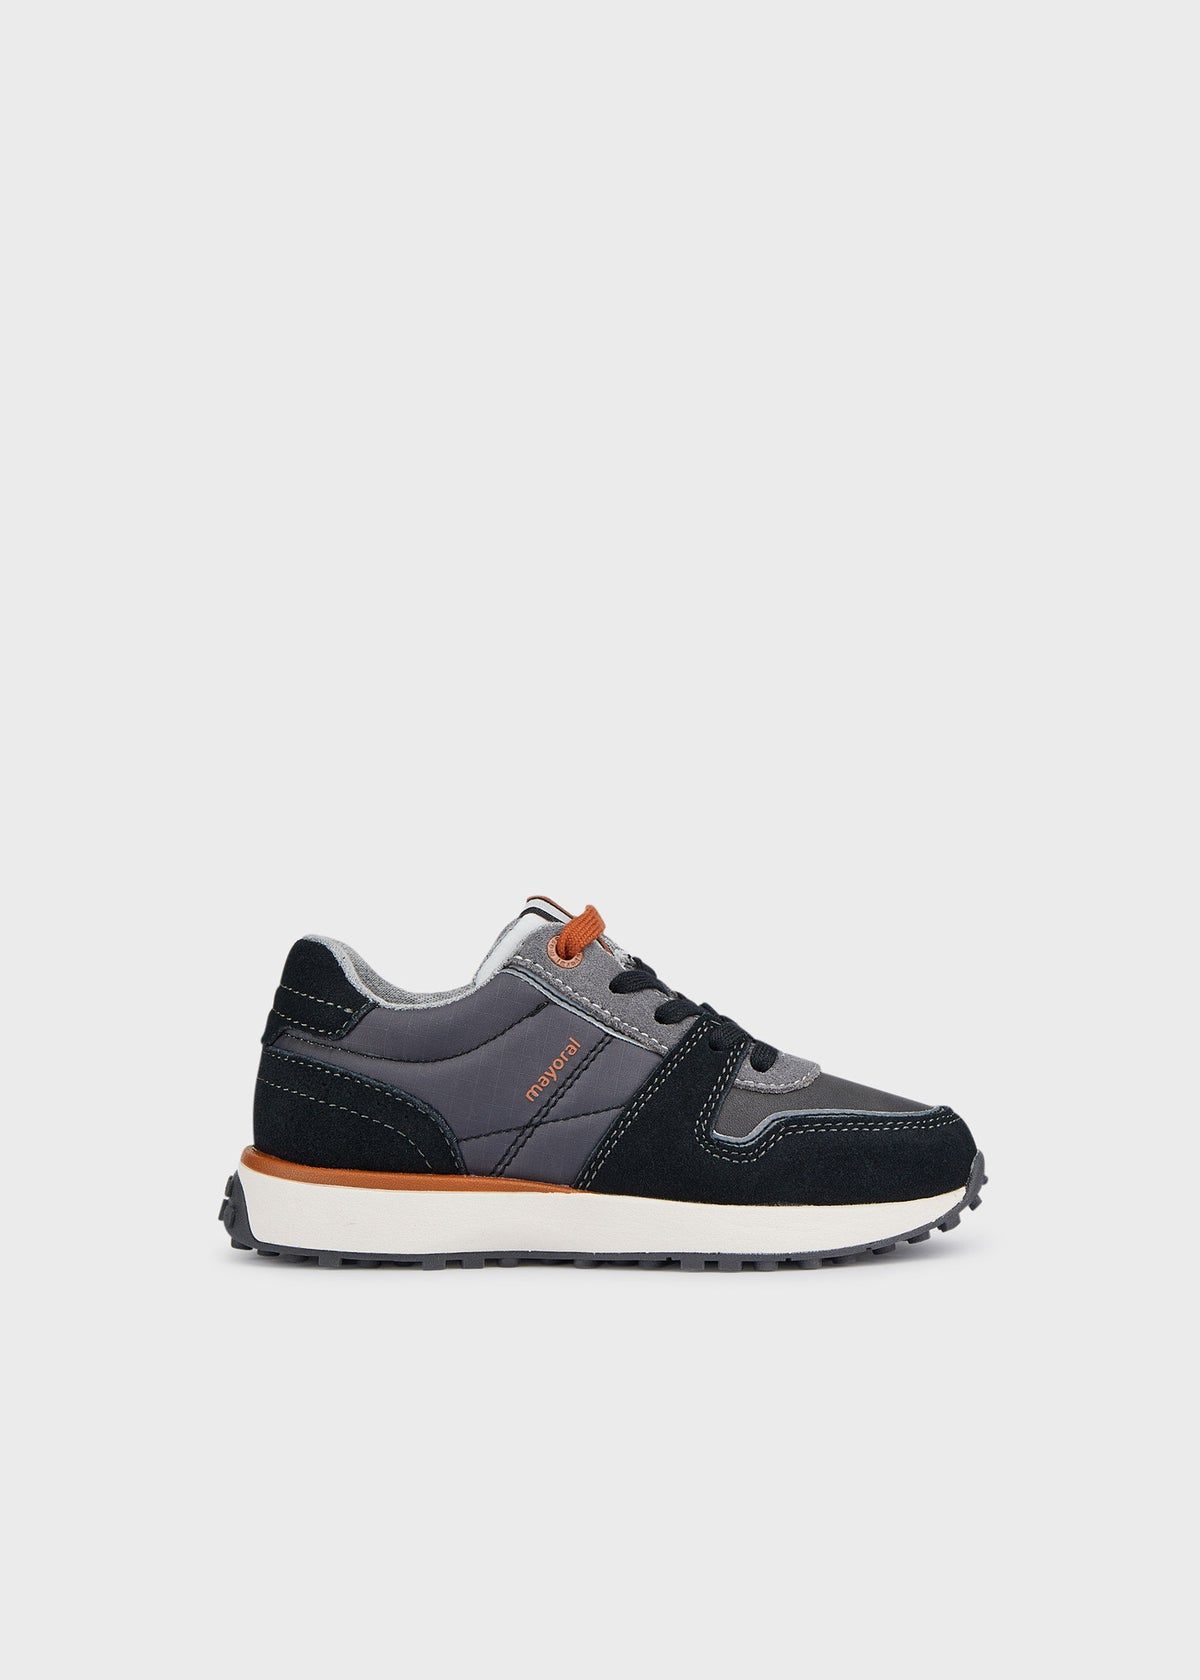 Schuhe 44361 Grau